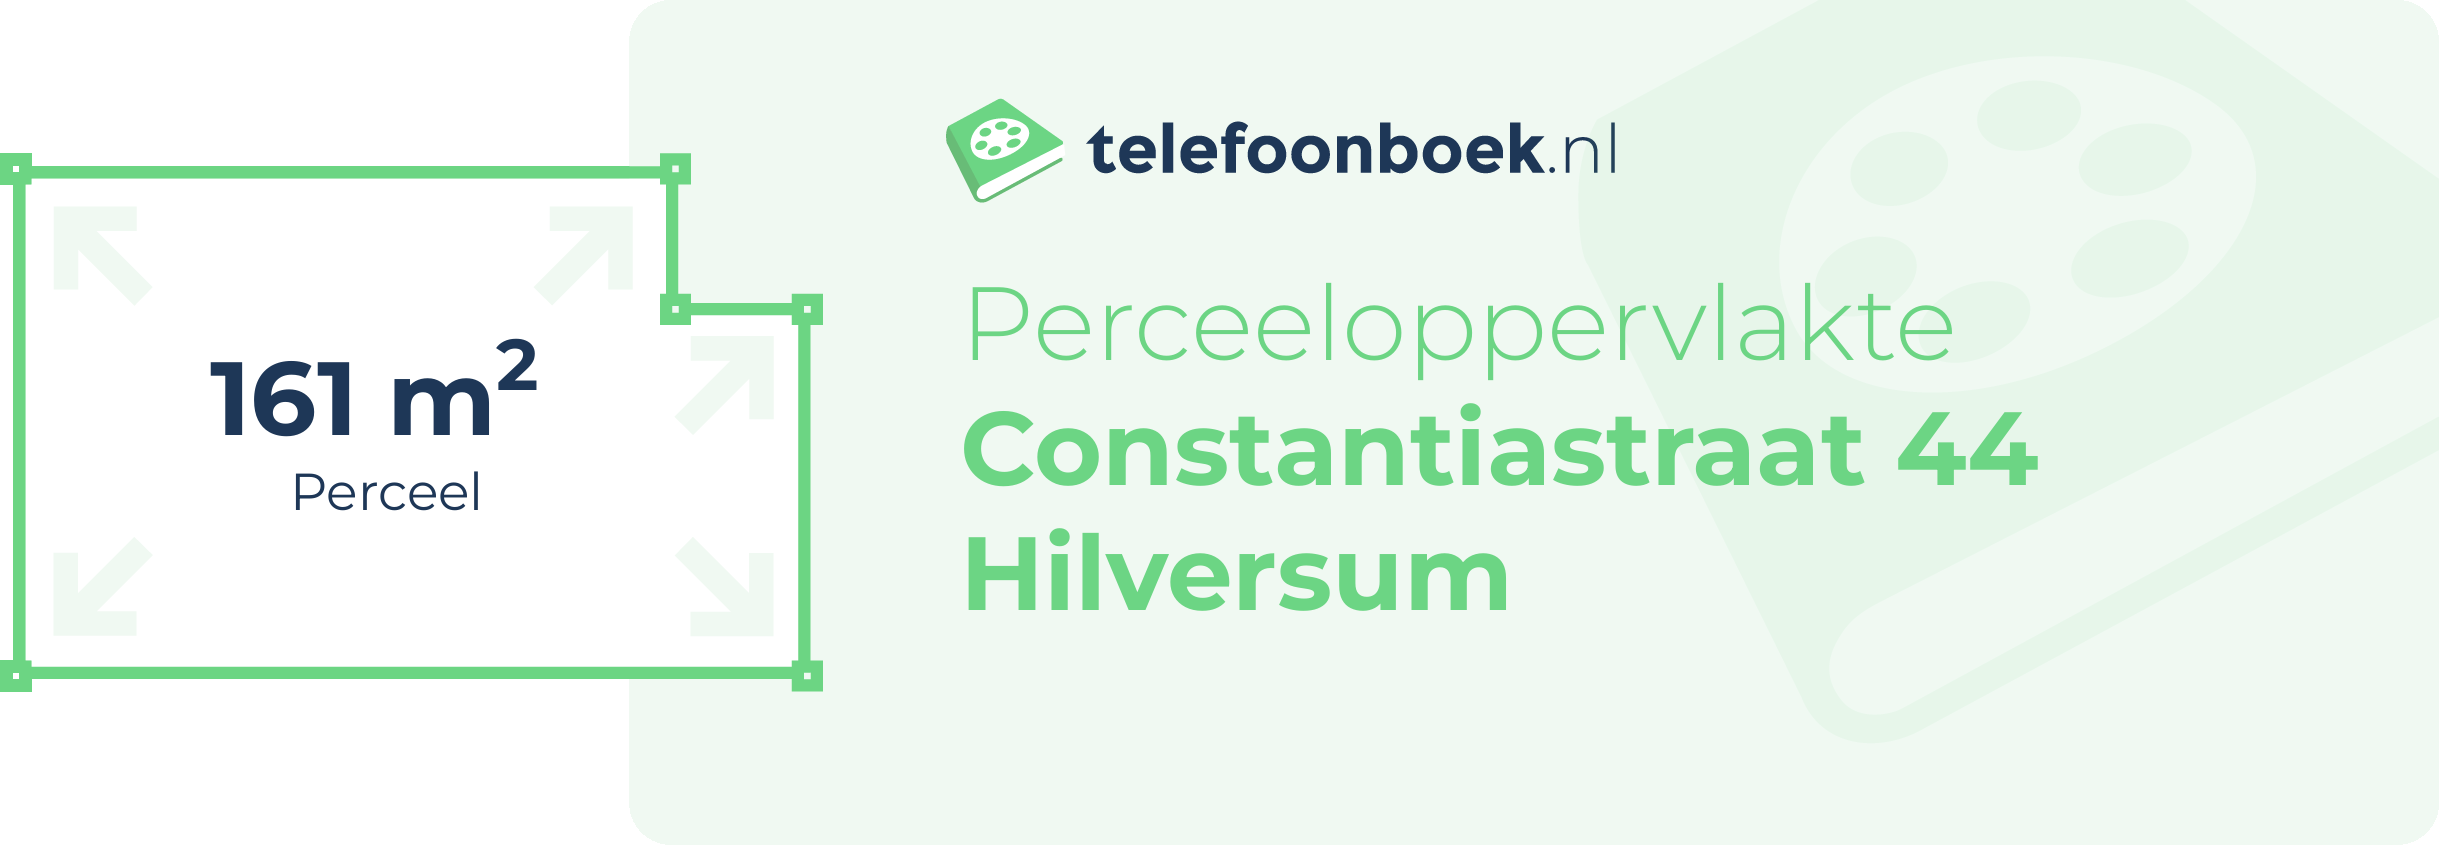 Perceeloppervlakte Constantiastraat 44 Hilversum